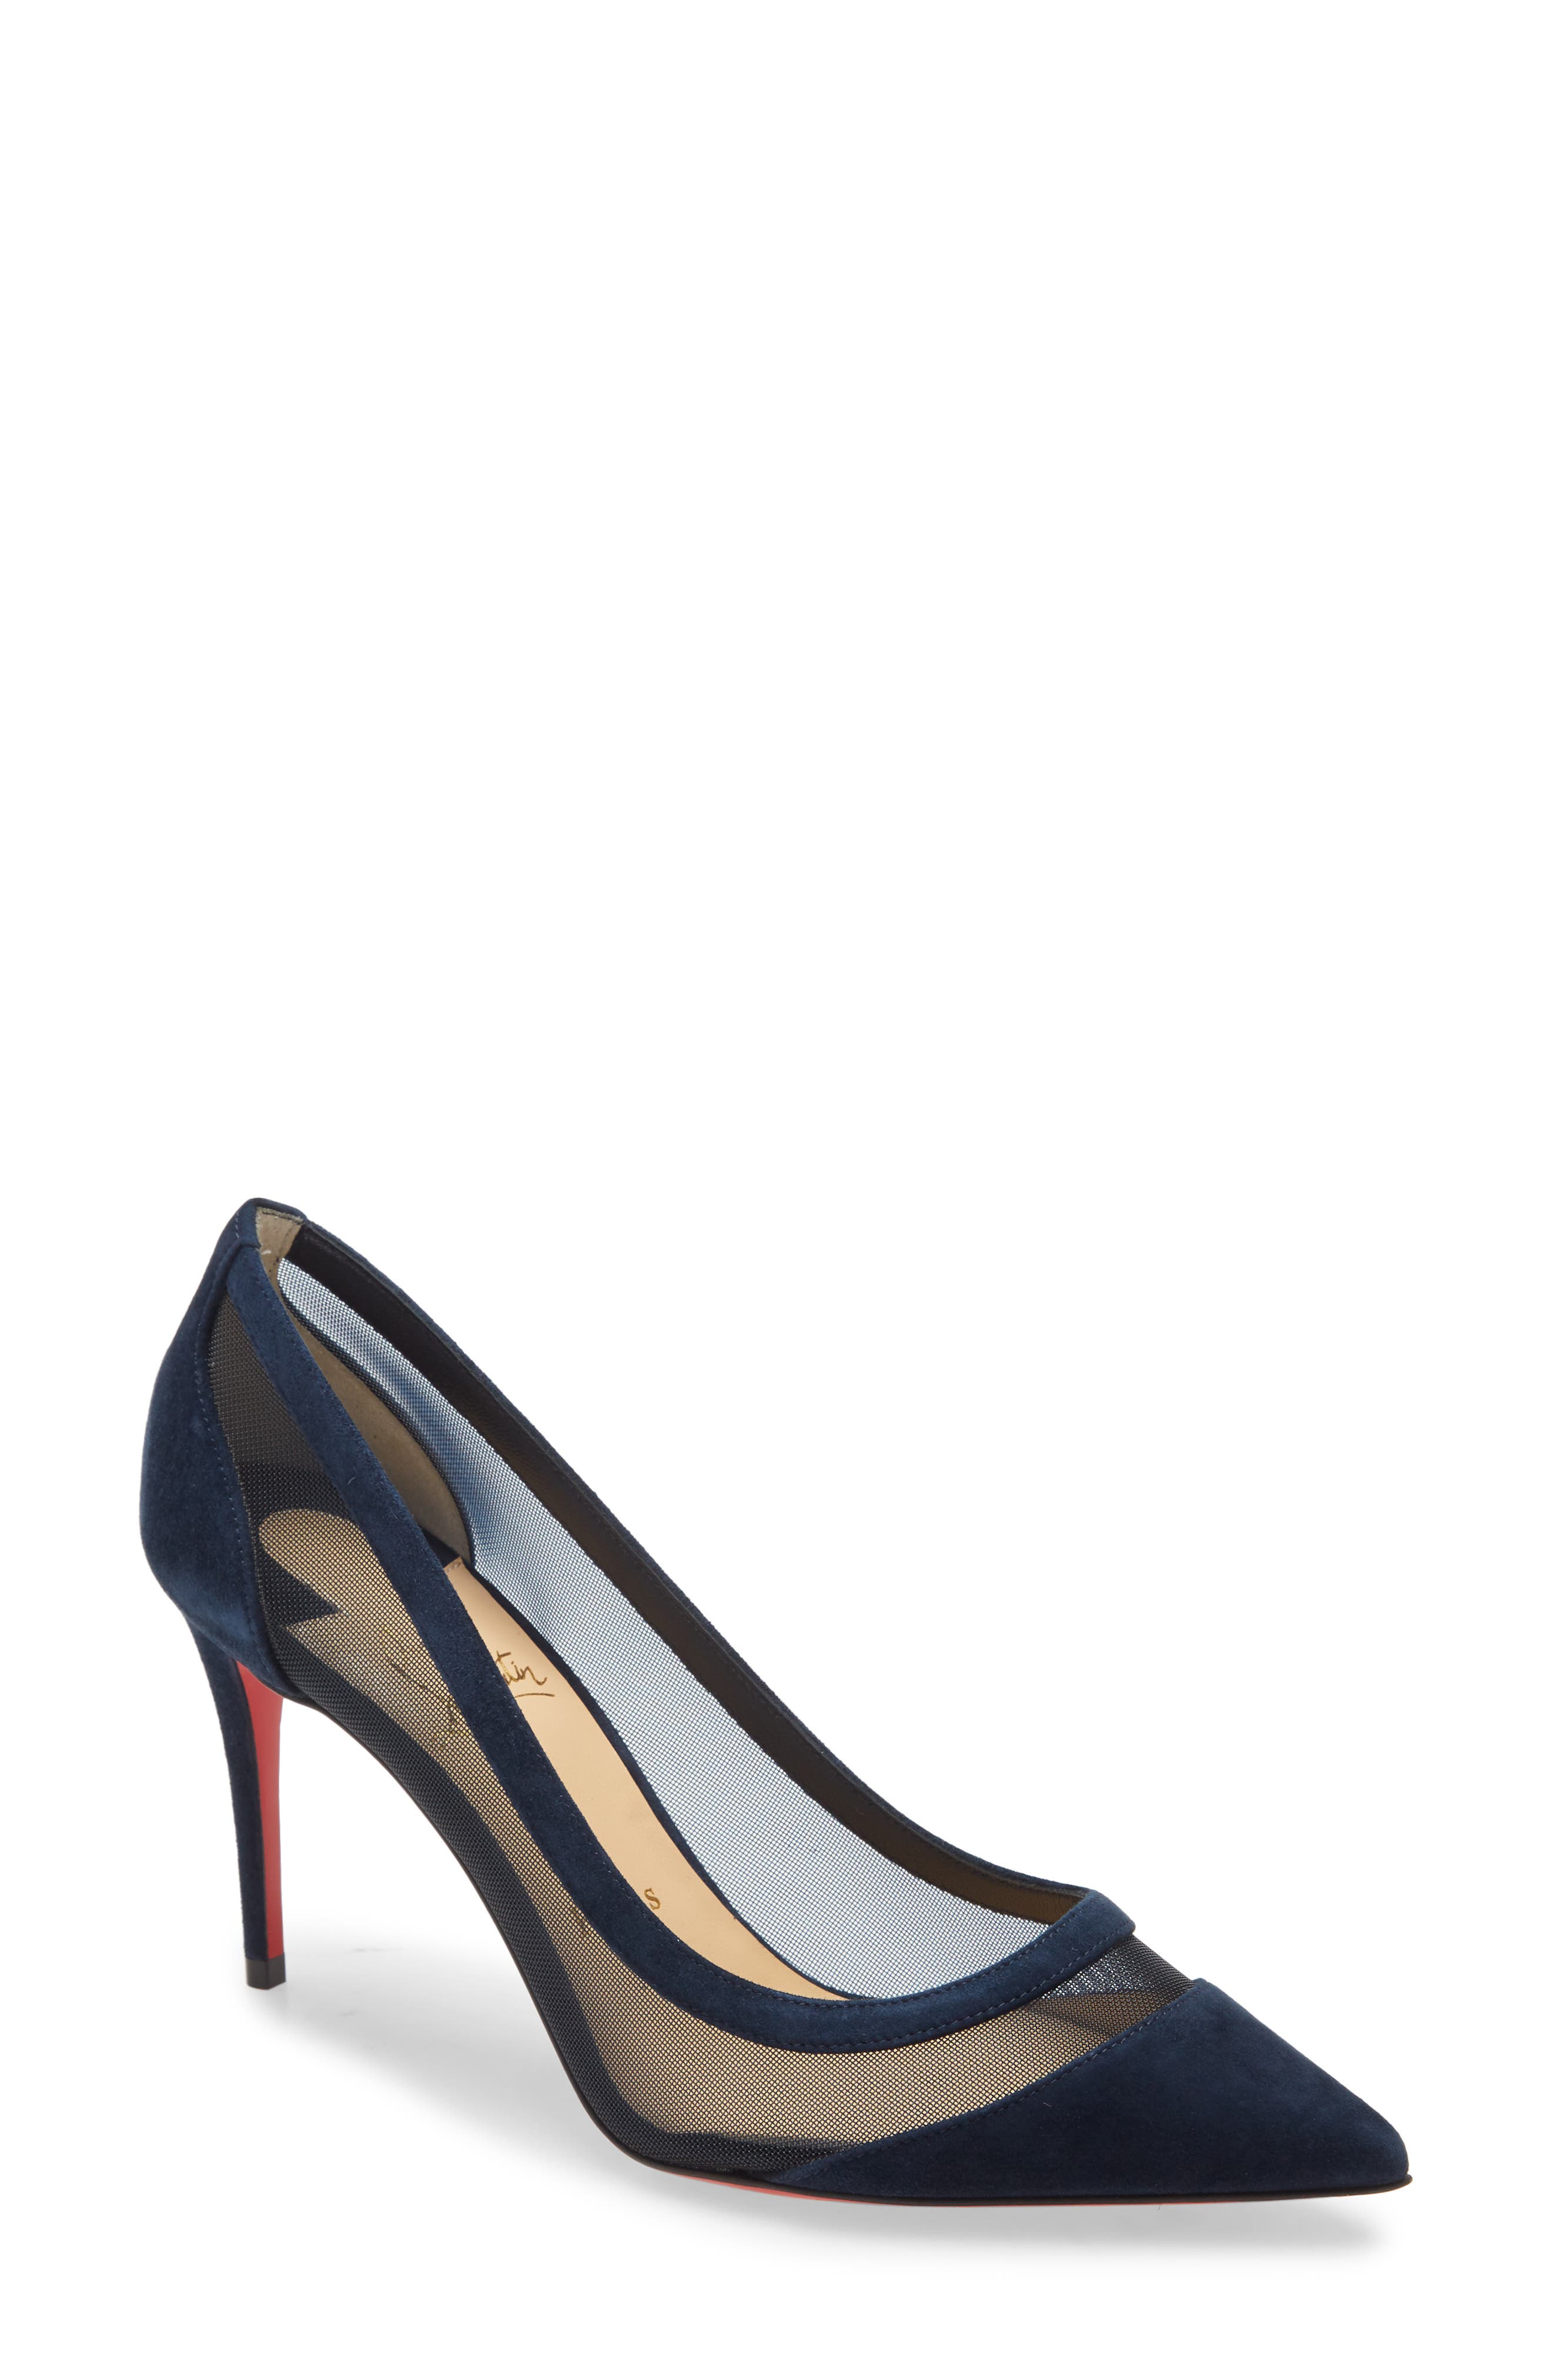 powder blue high heels